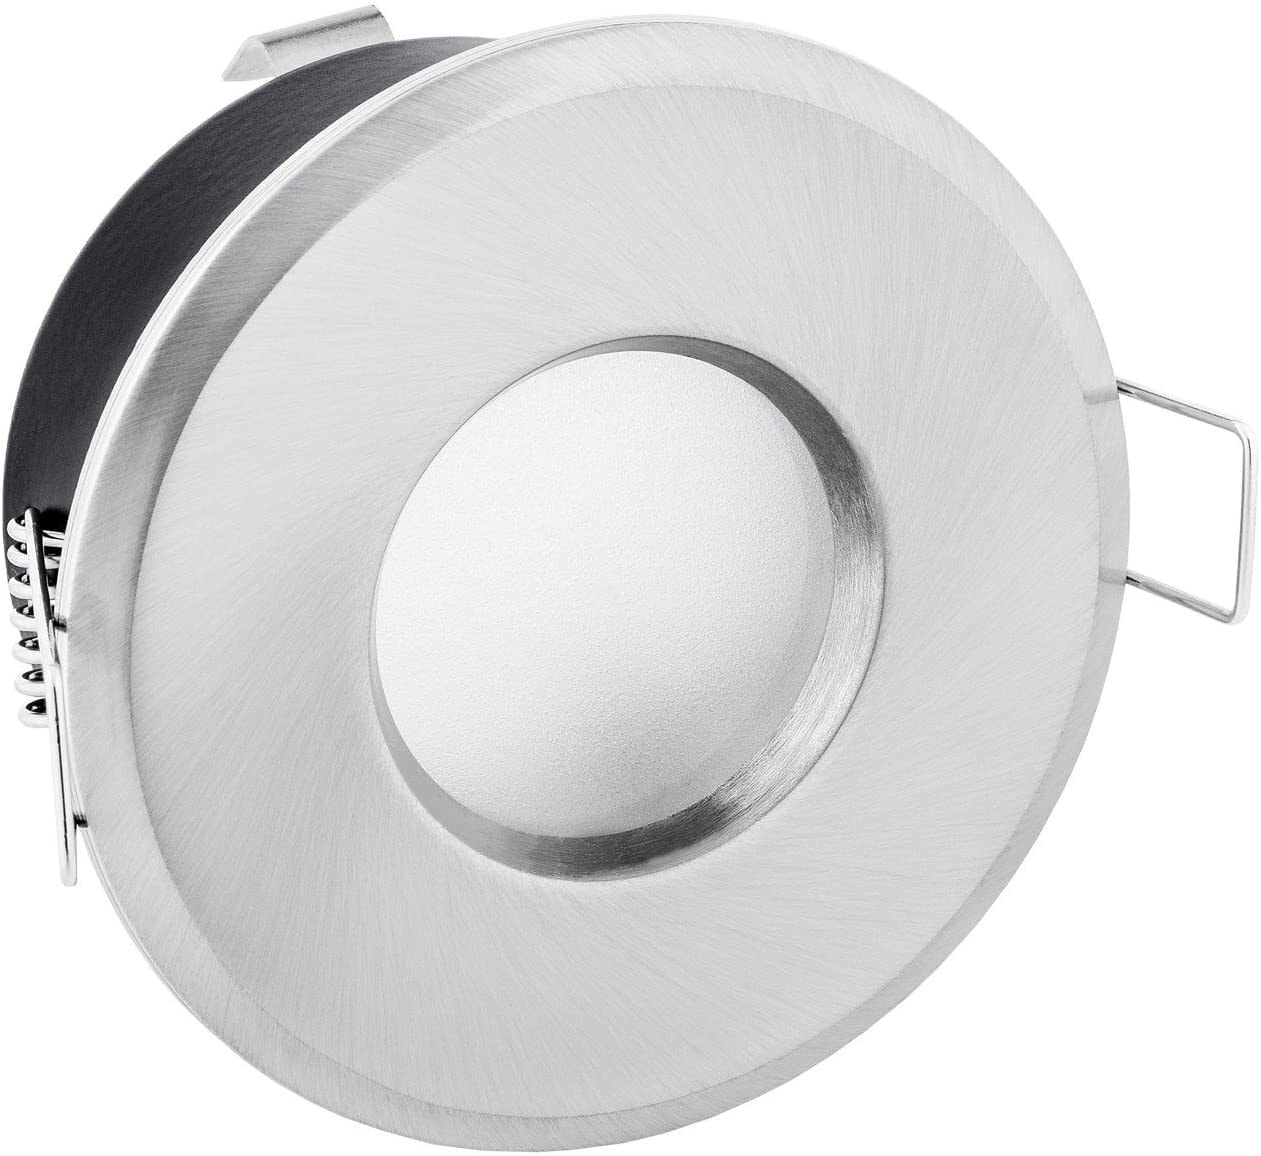 Встраиваемая рама прожектора, IP65, круглая, нержавеющая сталь и белый цвет [Класс энергопотребления A ++]